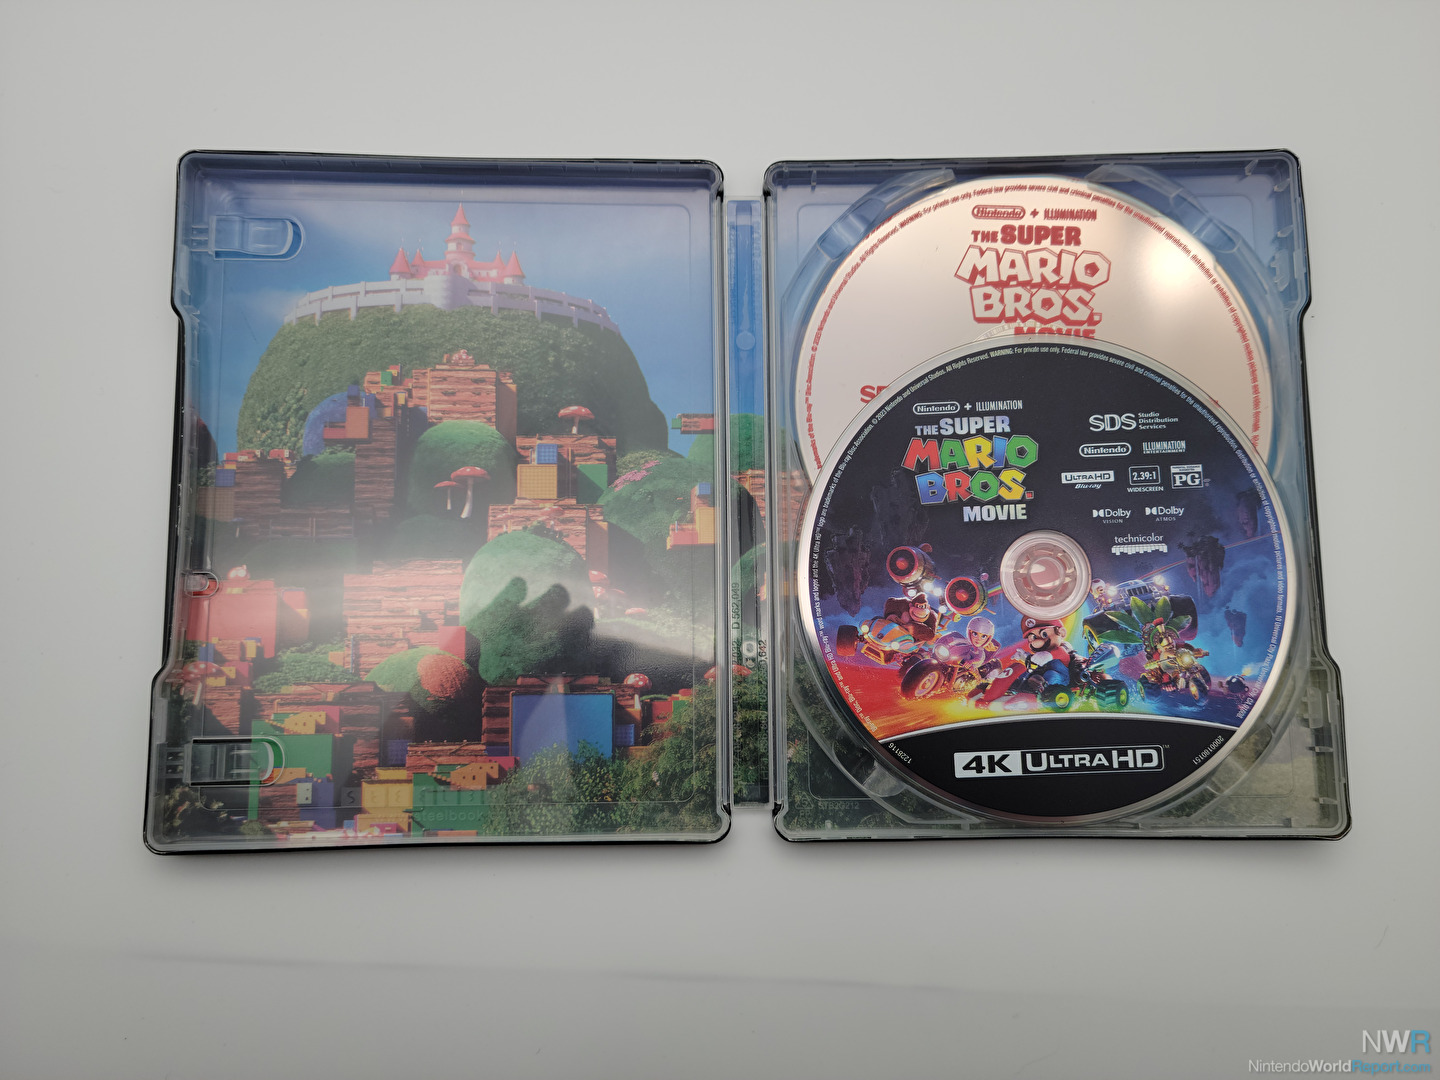 Universal Studios The Super Mario Bros. Movie (Blu-Ray + DVD +